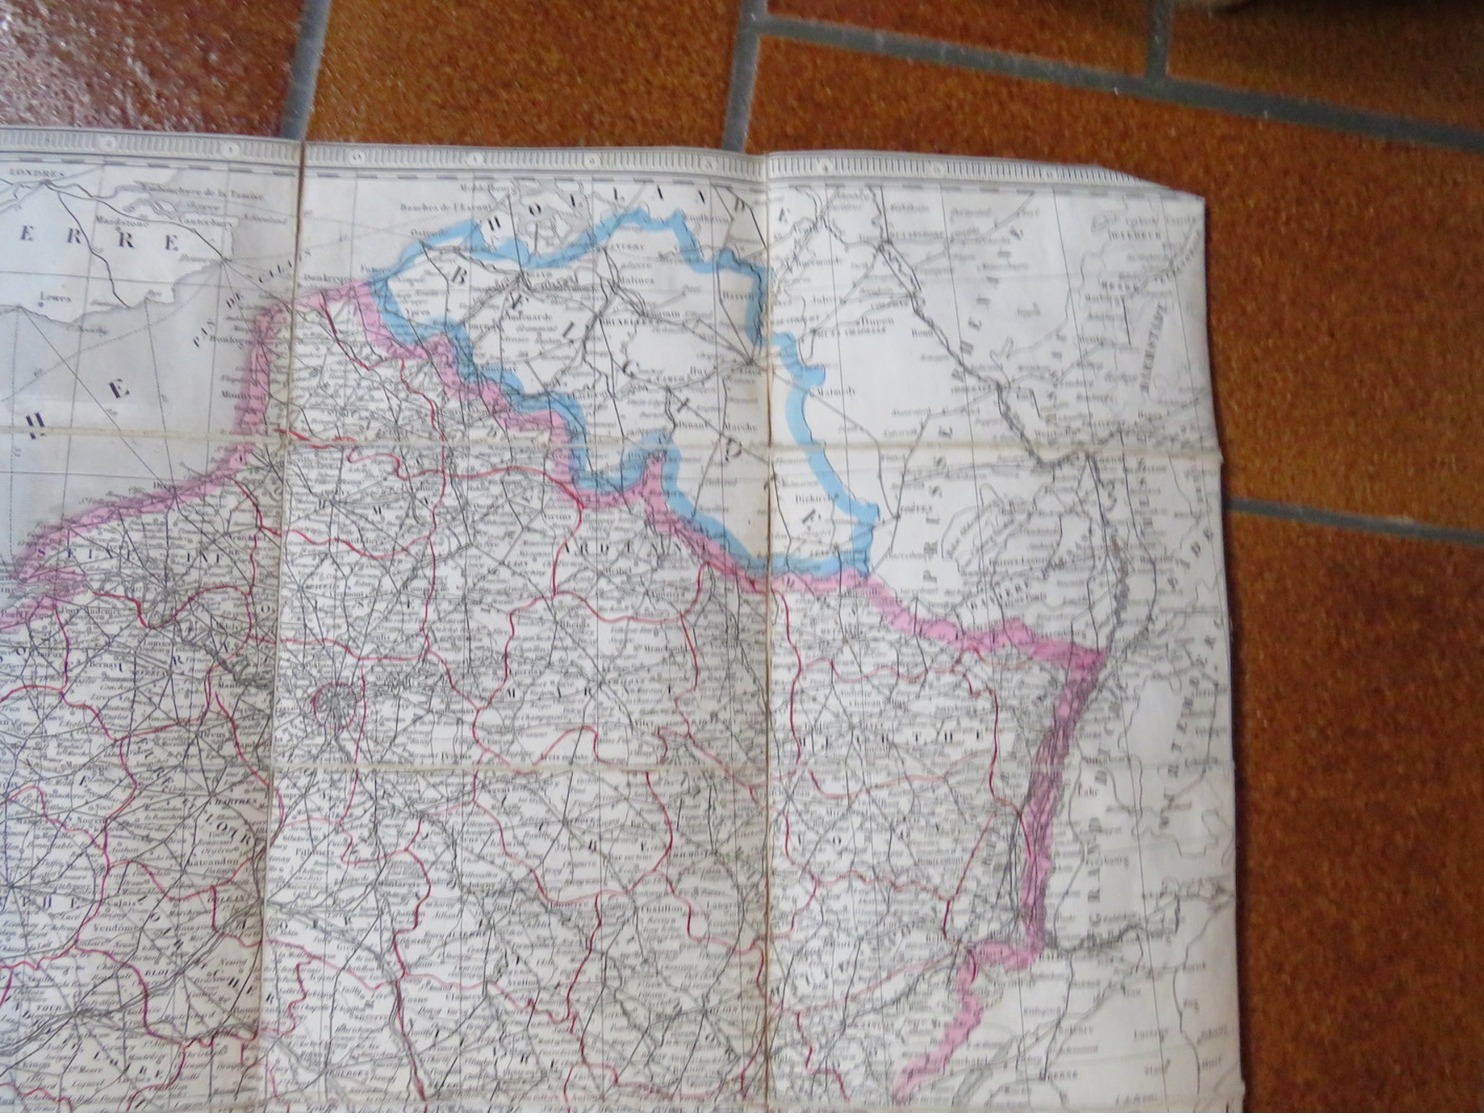 CHARLE géographe 1845: Carte routière de la France indiquant les routes de poste, royales, chemins de fer ....